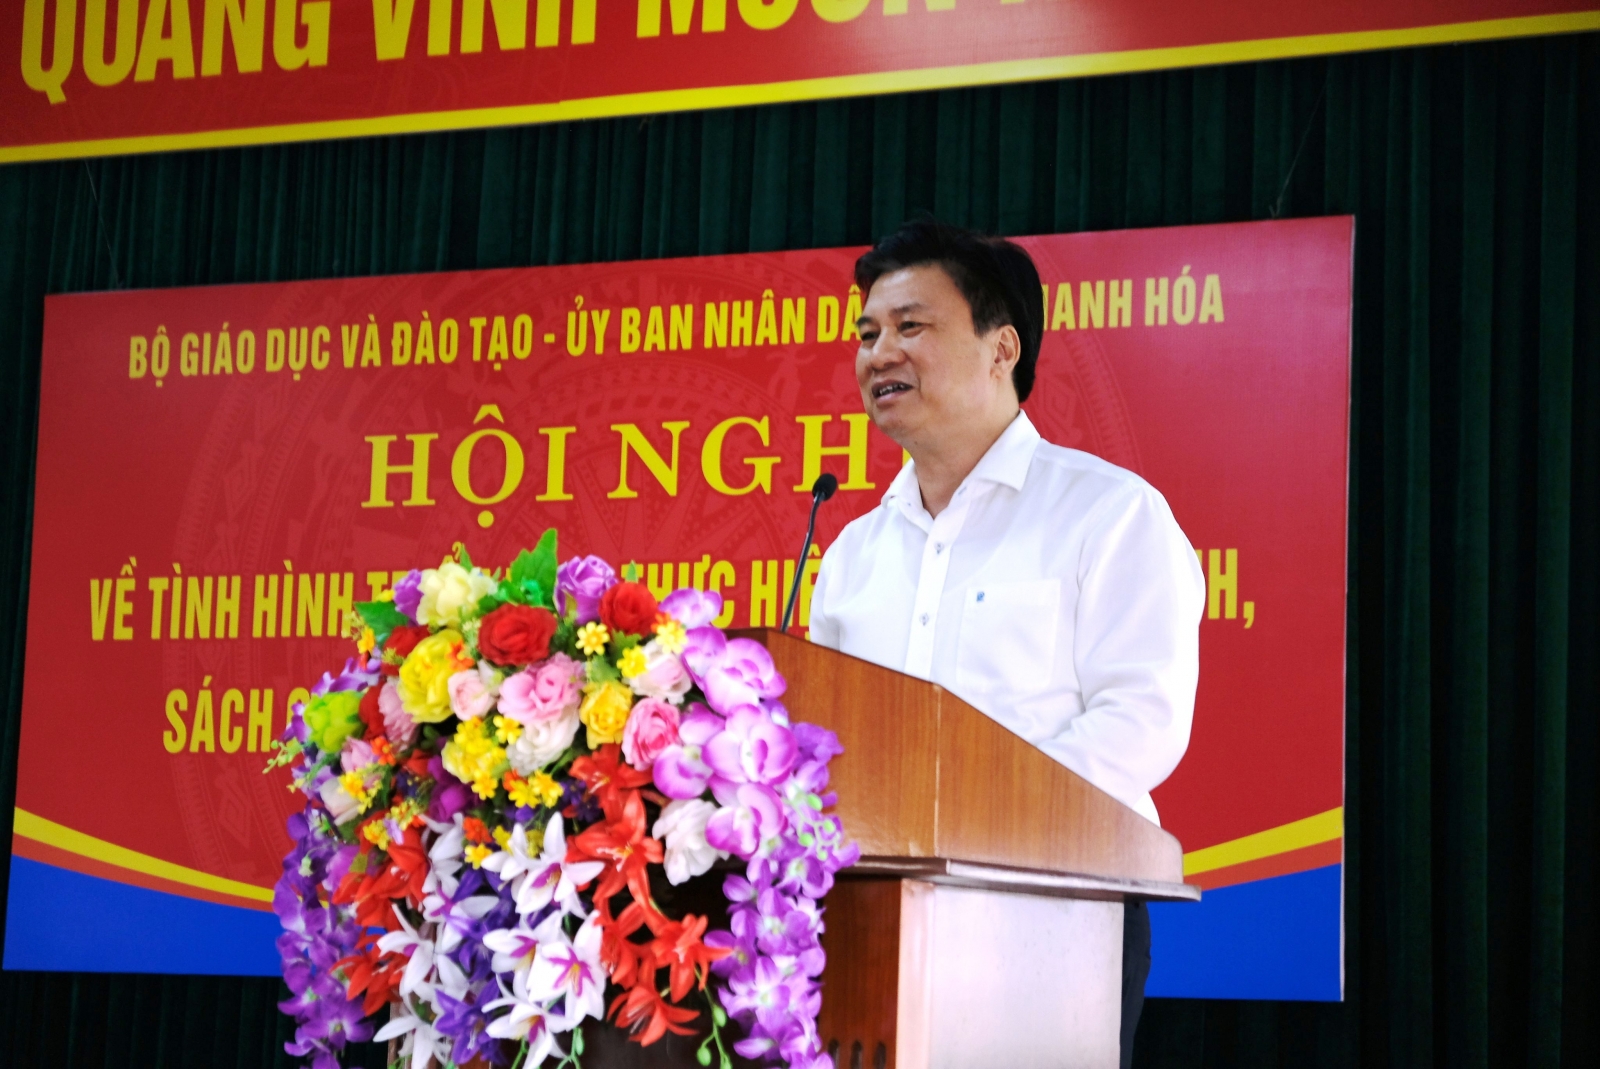 Thứ trưởng Nguyễn Hữu Độ: "Tạo cơ hội, điều kiện tốt nhất cho học sinh"